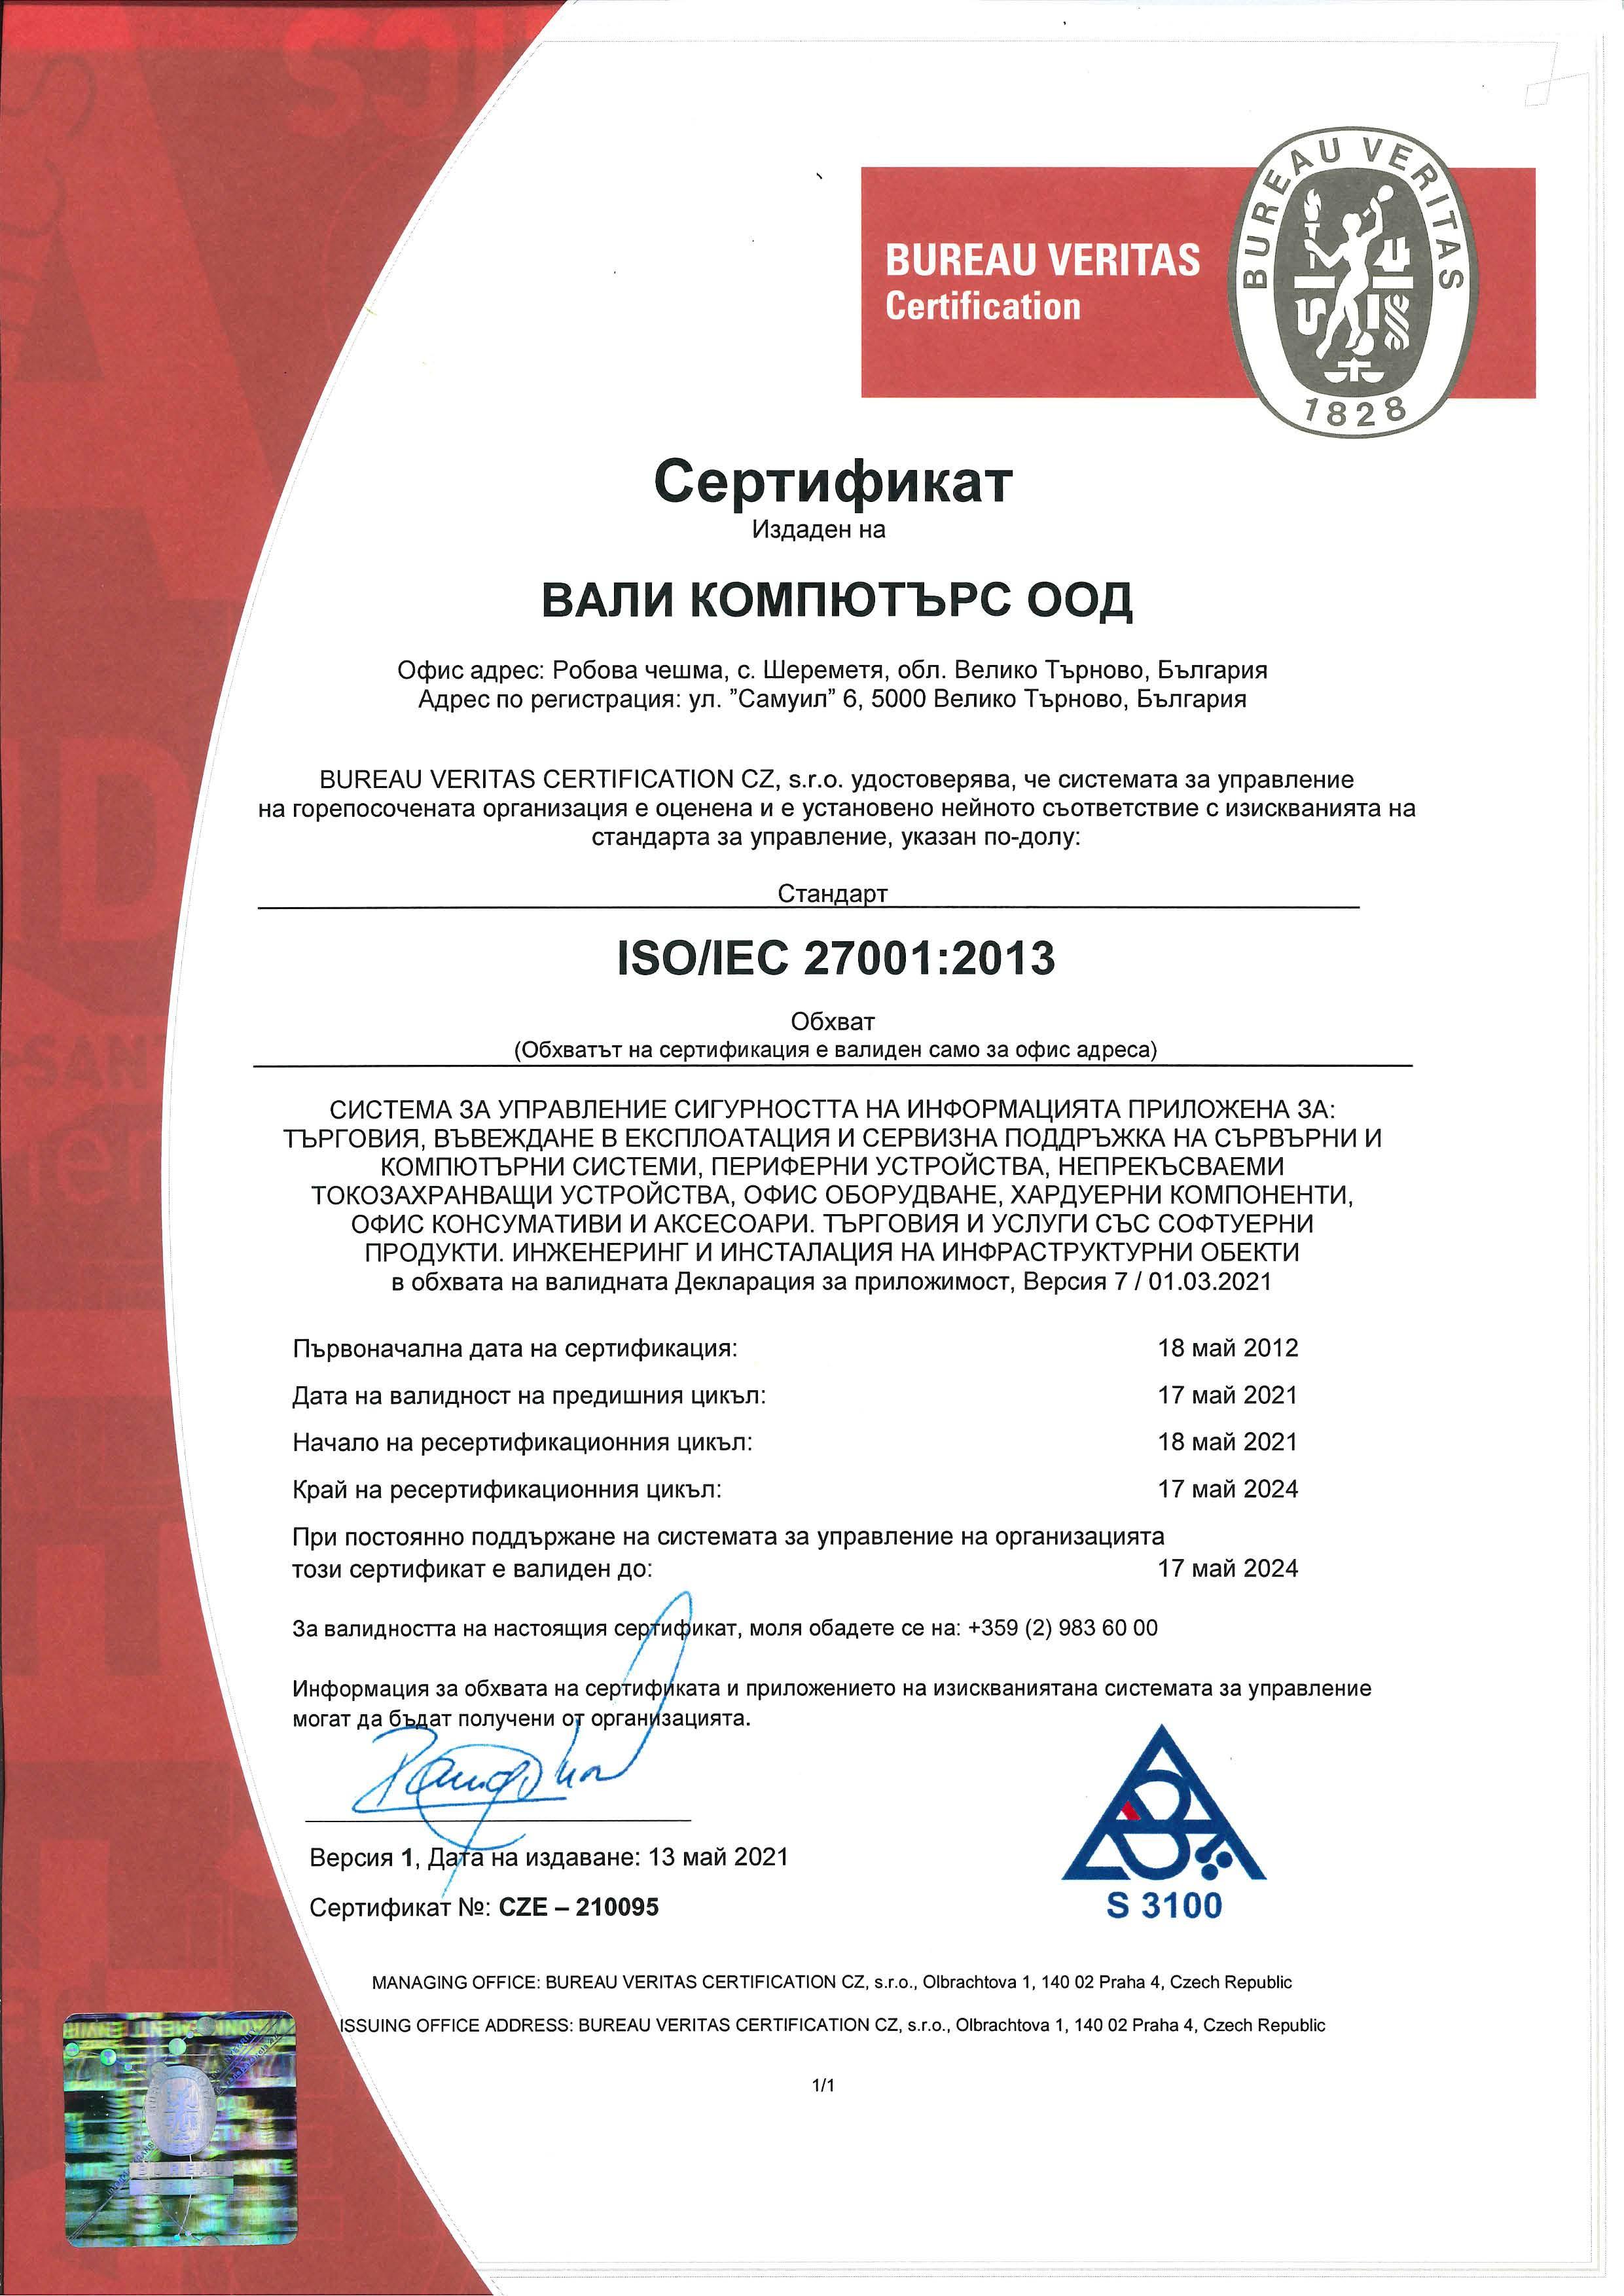 Сертификат ISO 27001:2015